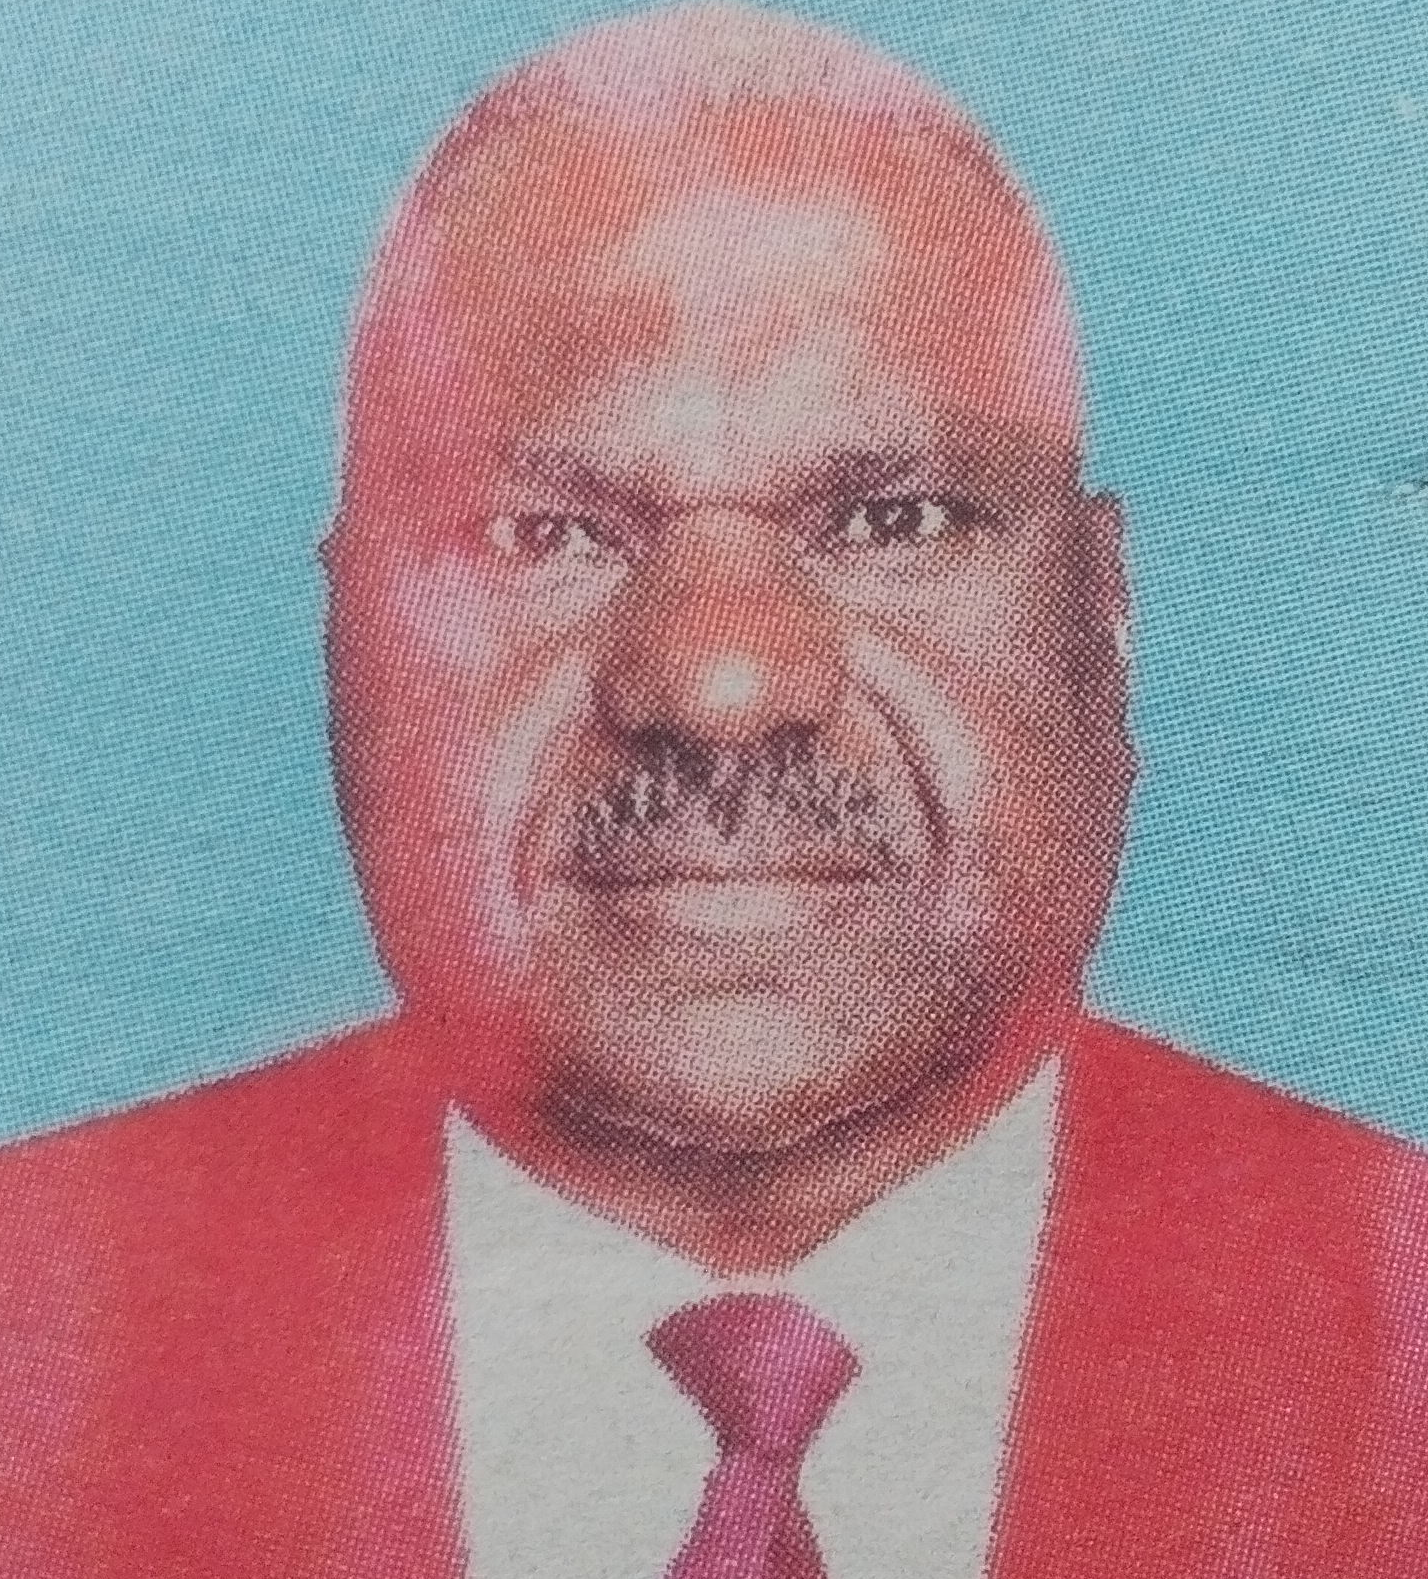 Obituary Image of Dr Fredrick Ngatu Mucheru